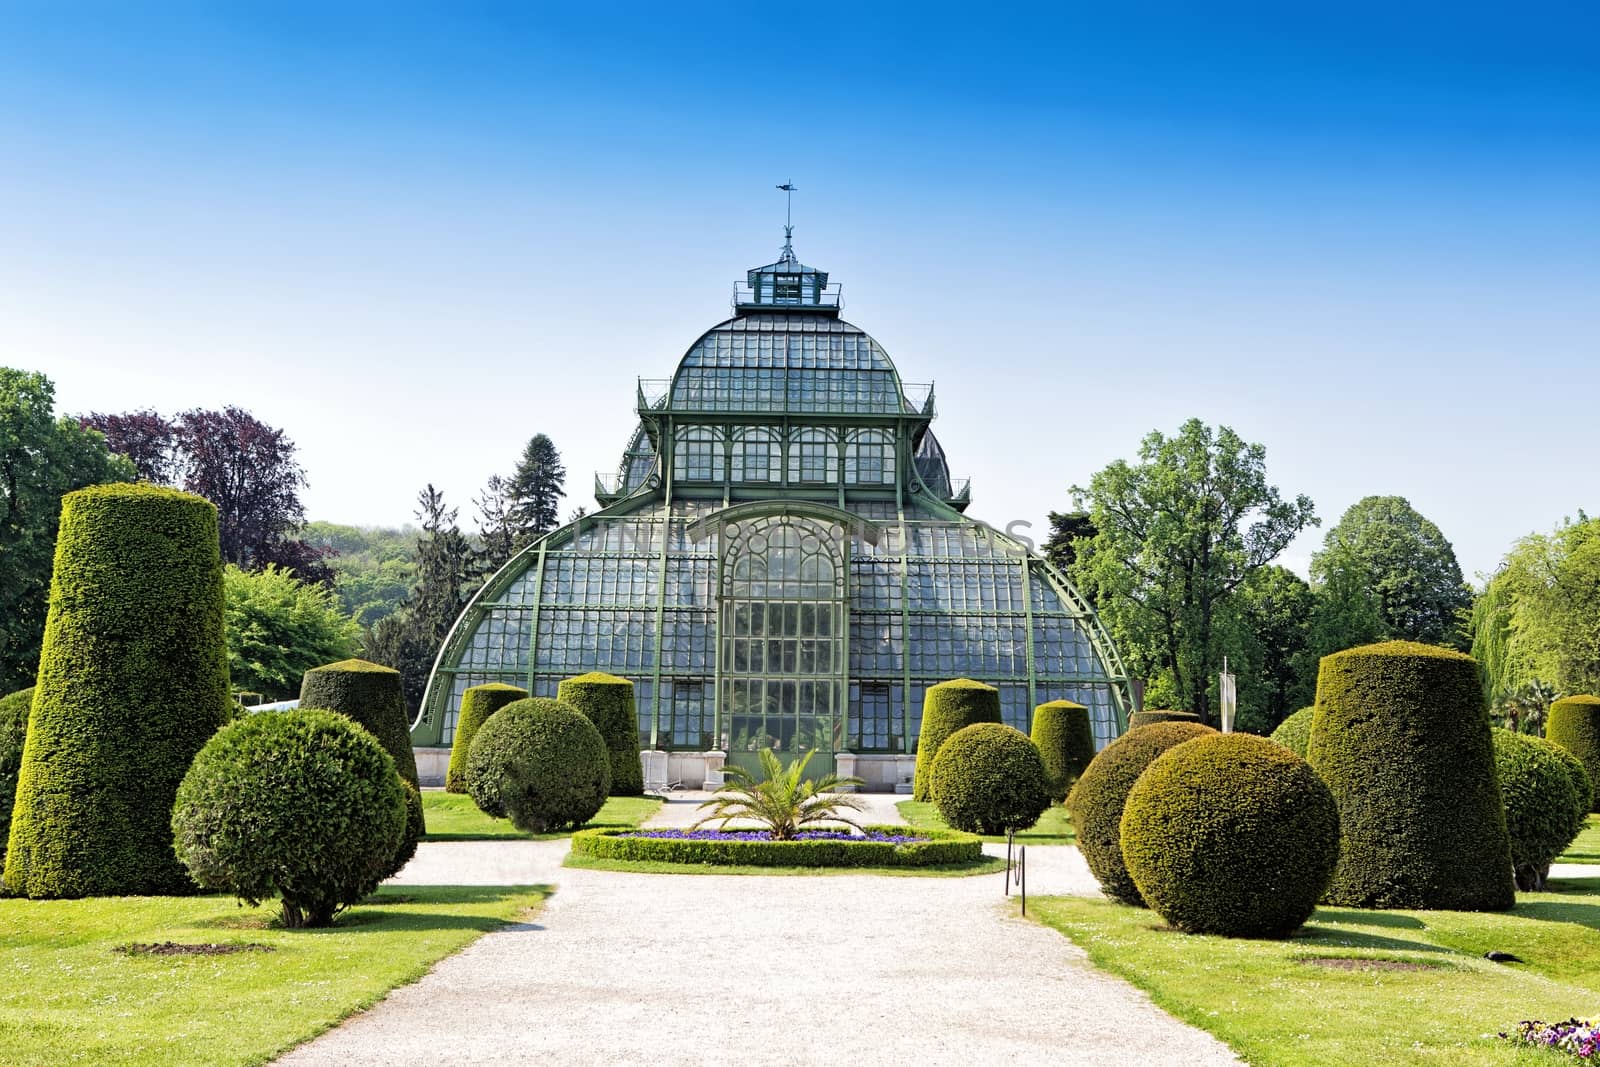 Botanical garden near Schonbrunn palace in Vienna by mitakag